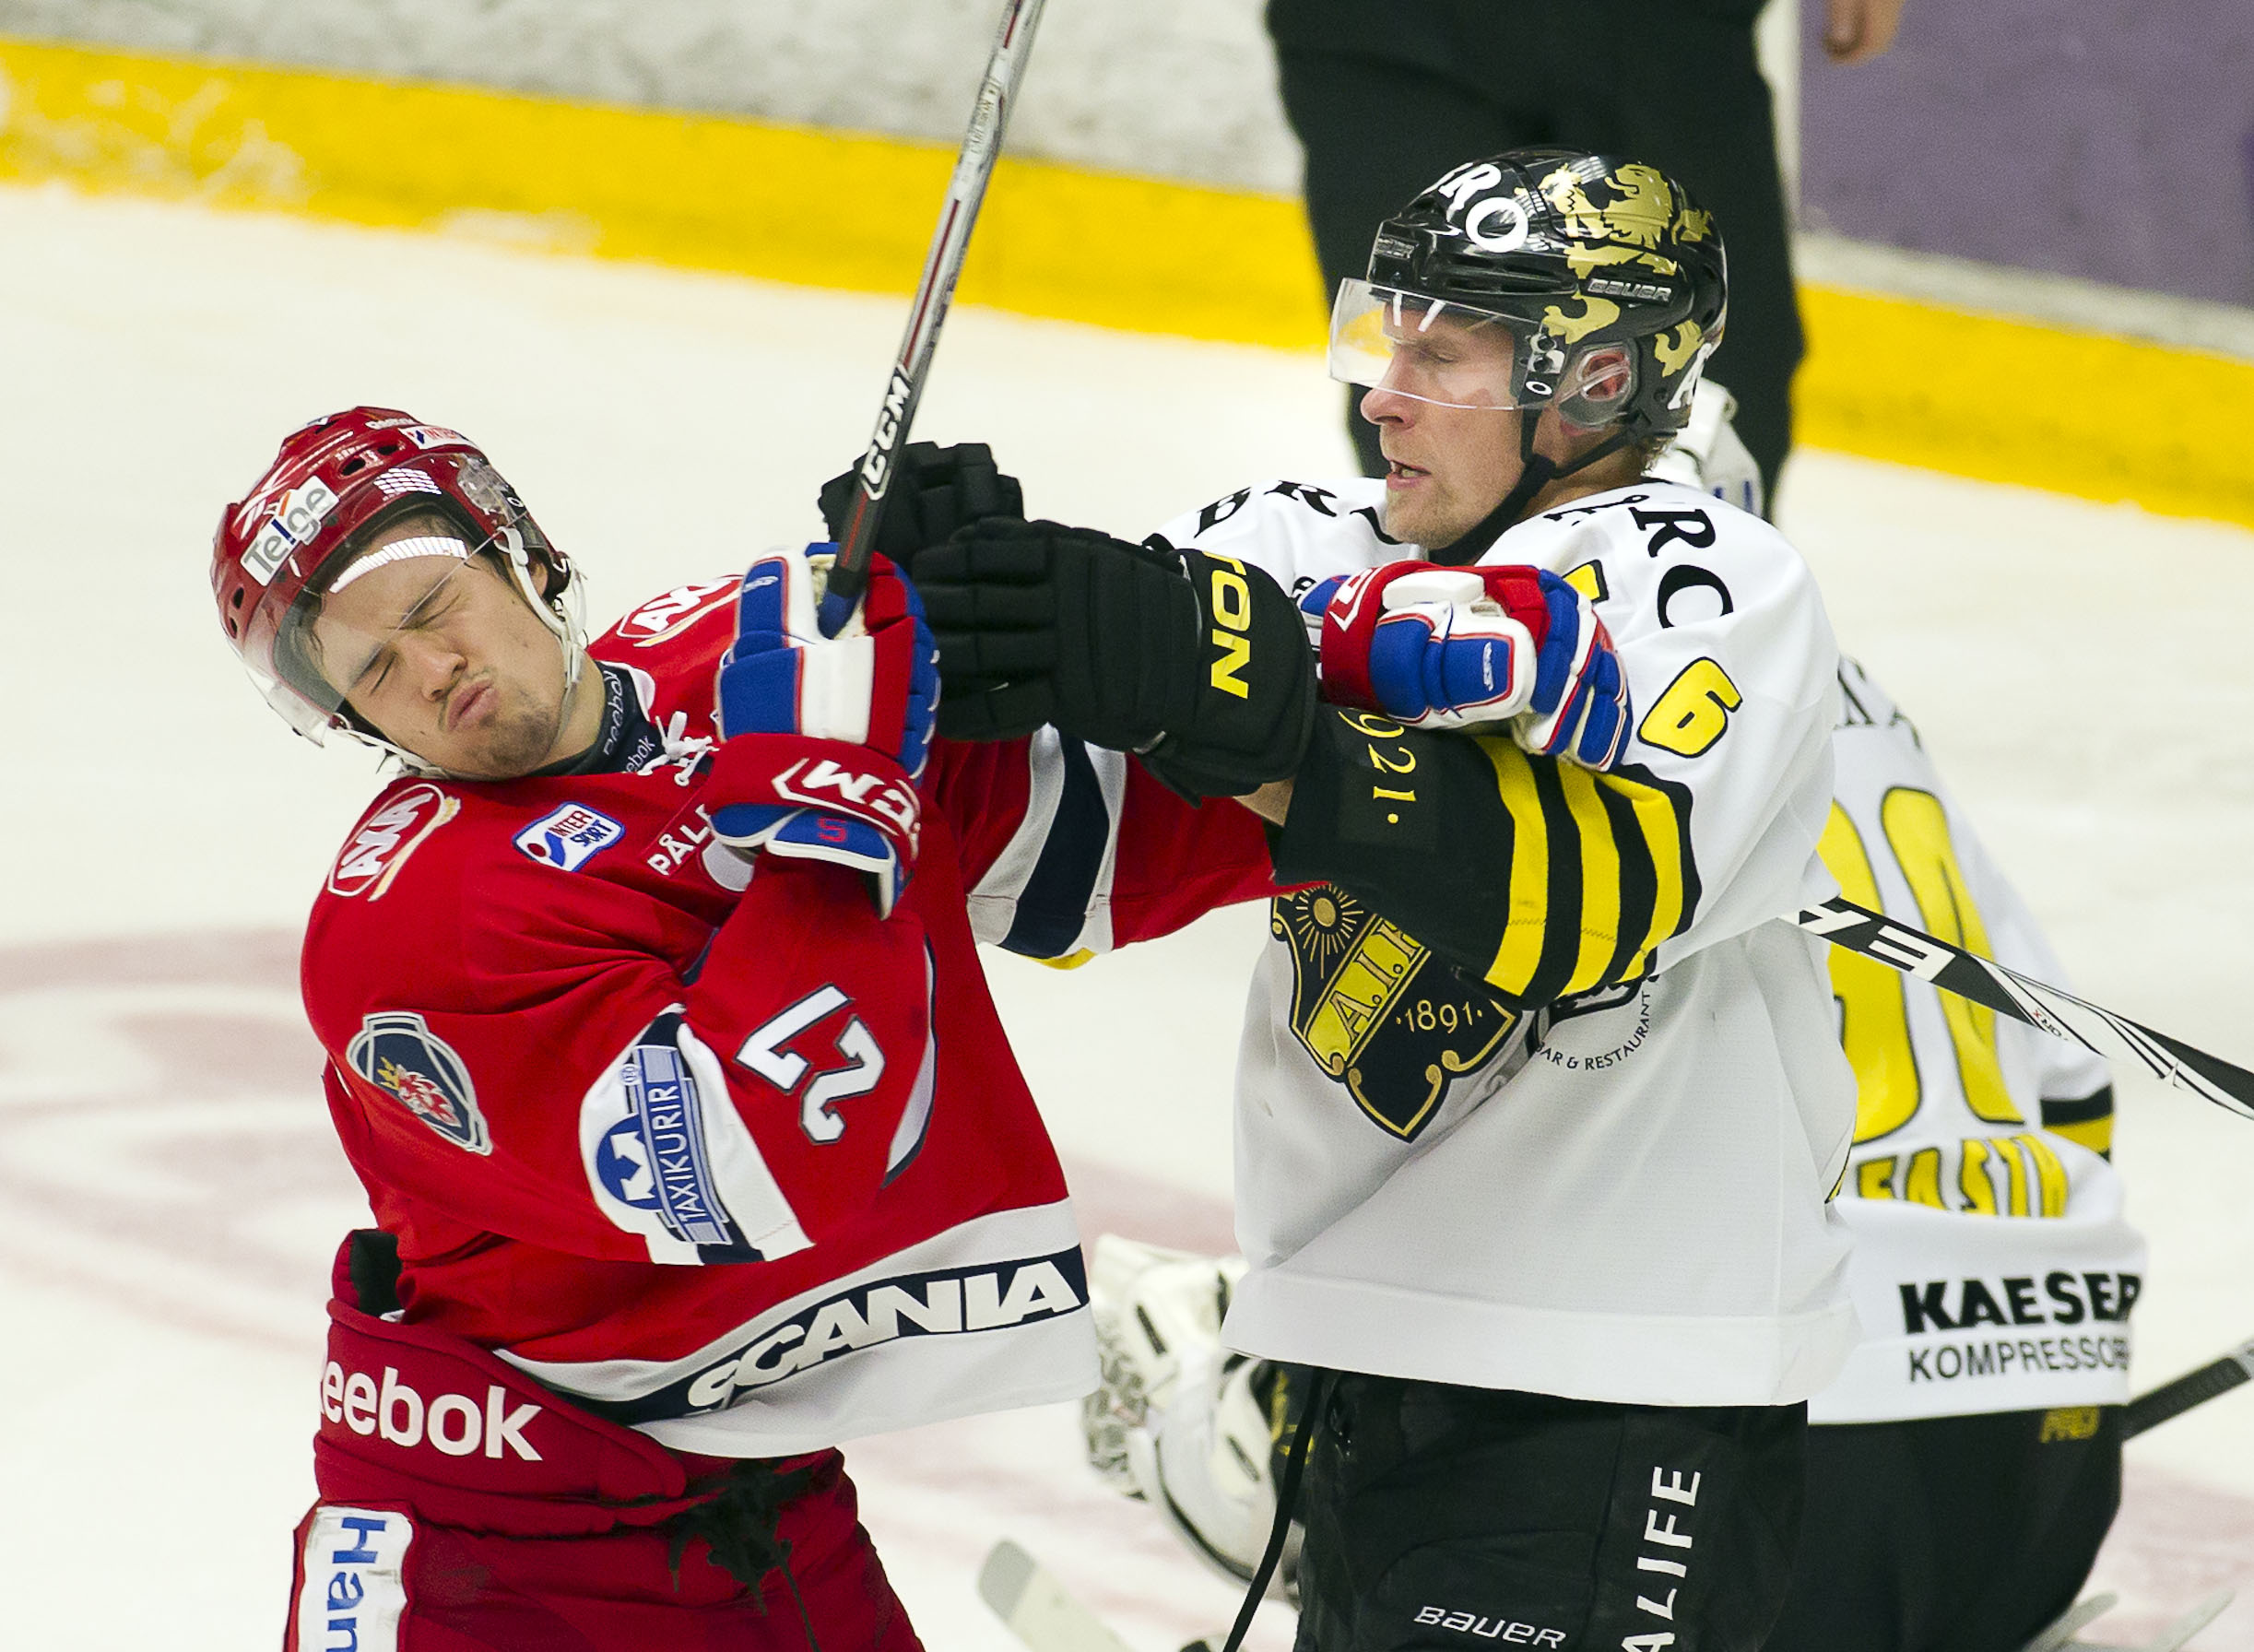 Dick Tärnström klockade mycket istid under veckan och bidrog starkt till det lugna och fräscha spelet AIK visar upp. Noterades även för ett mål och en assist på de tre matcherna och spelade 3-0 i spel med lika manskap på isen.